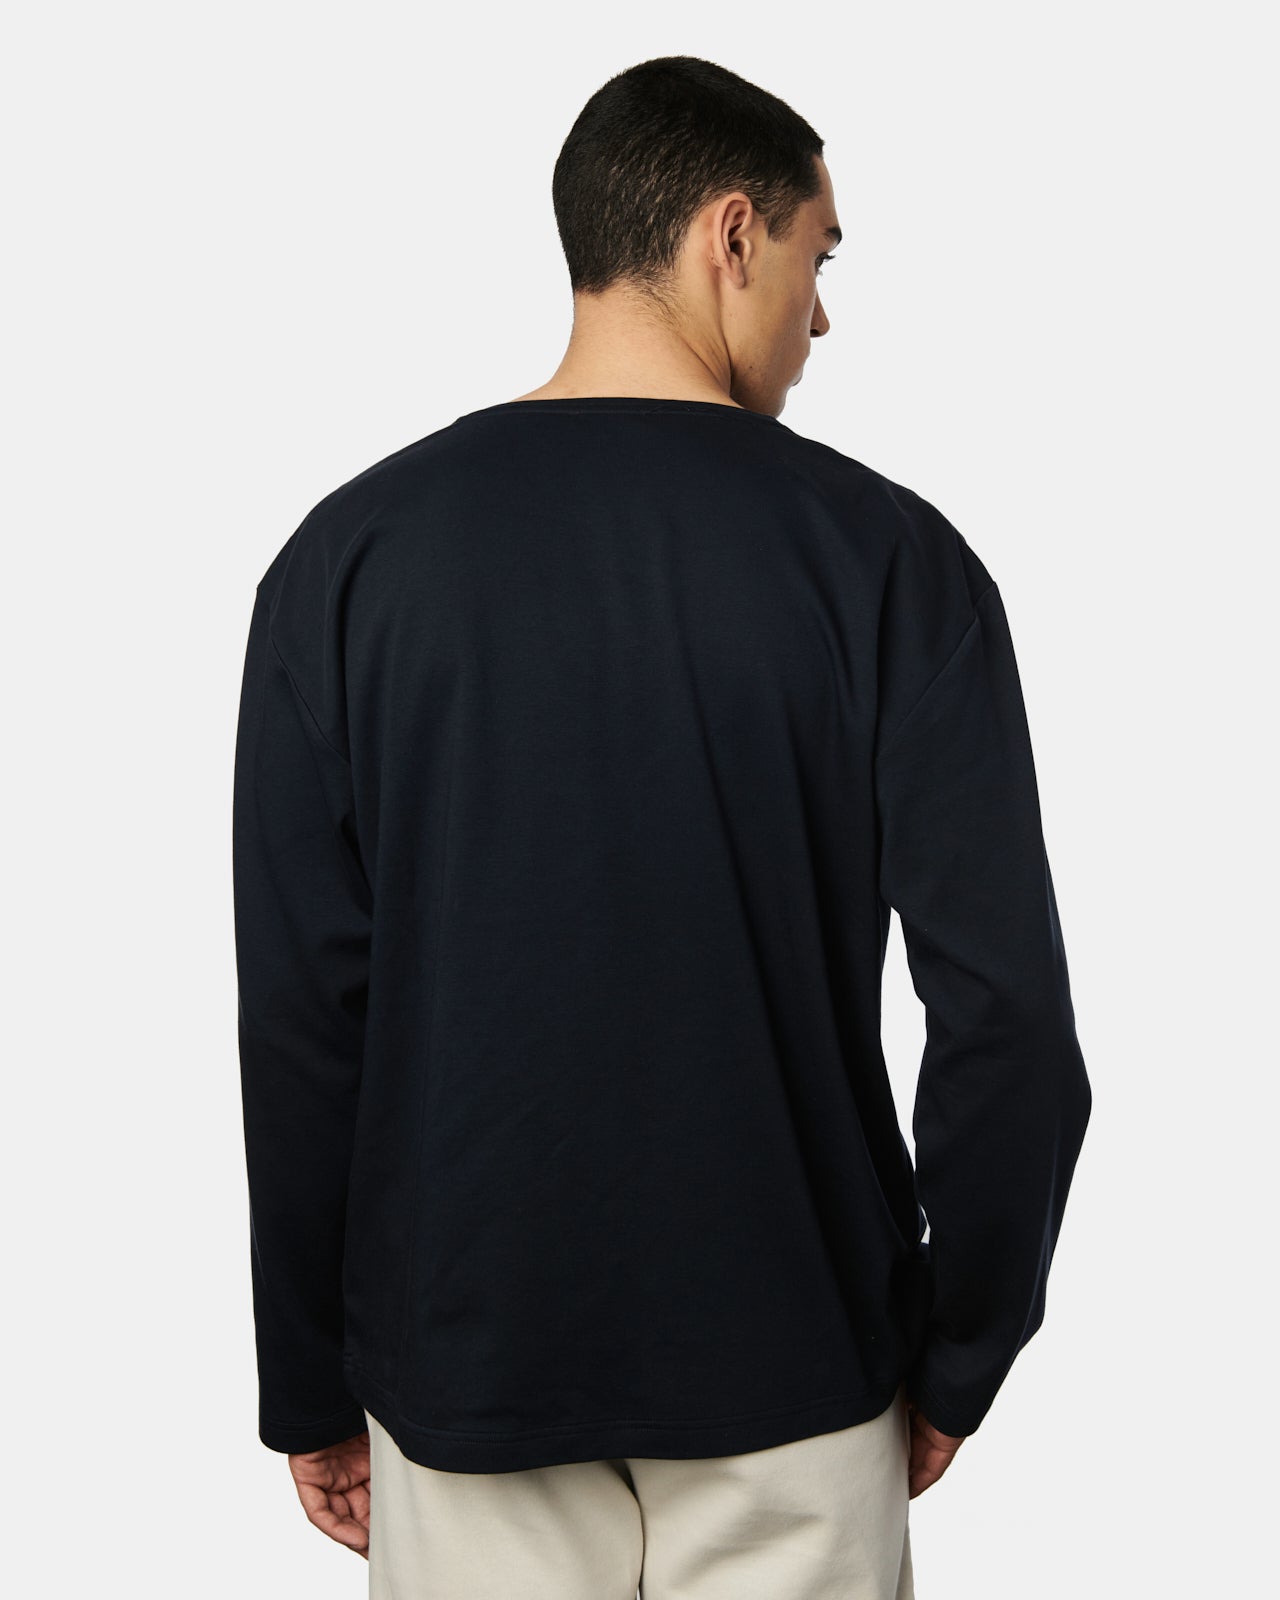 Rückenansicht des Herren Sweatshirts Torge in der Farbe Dark Navy